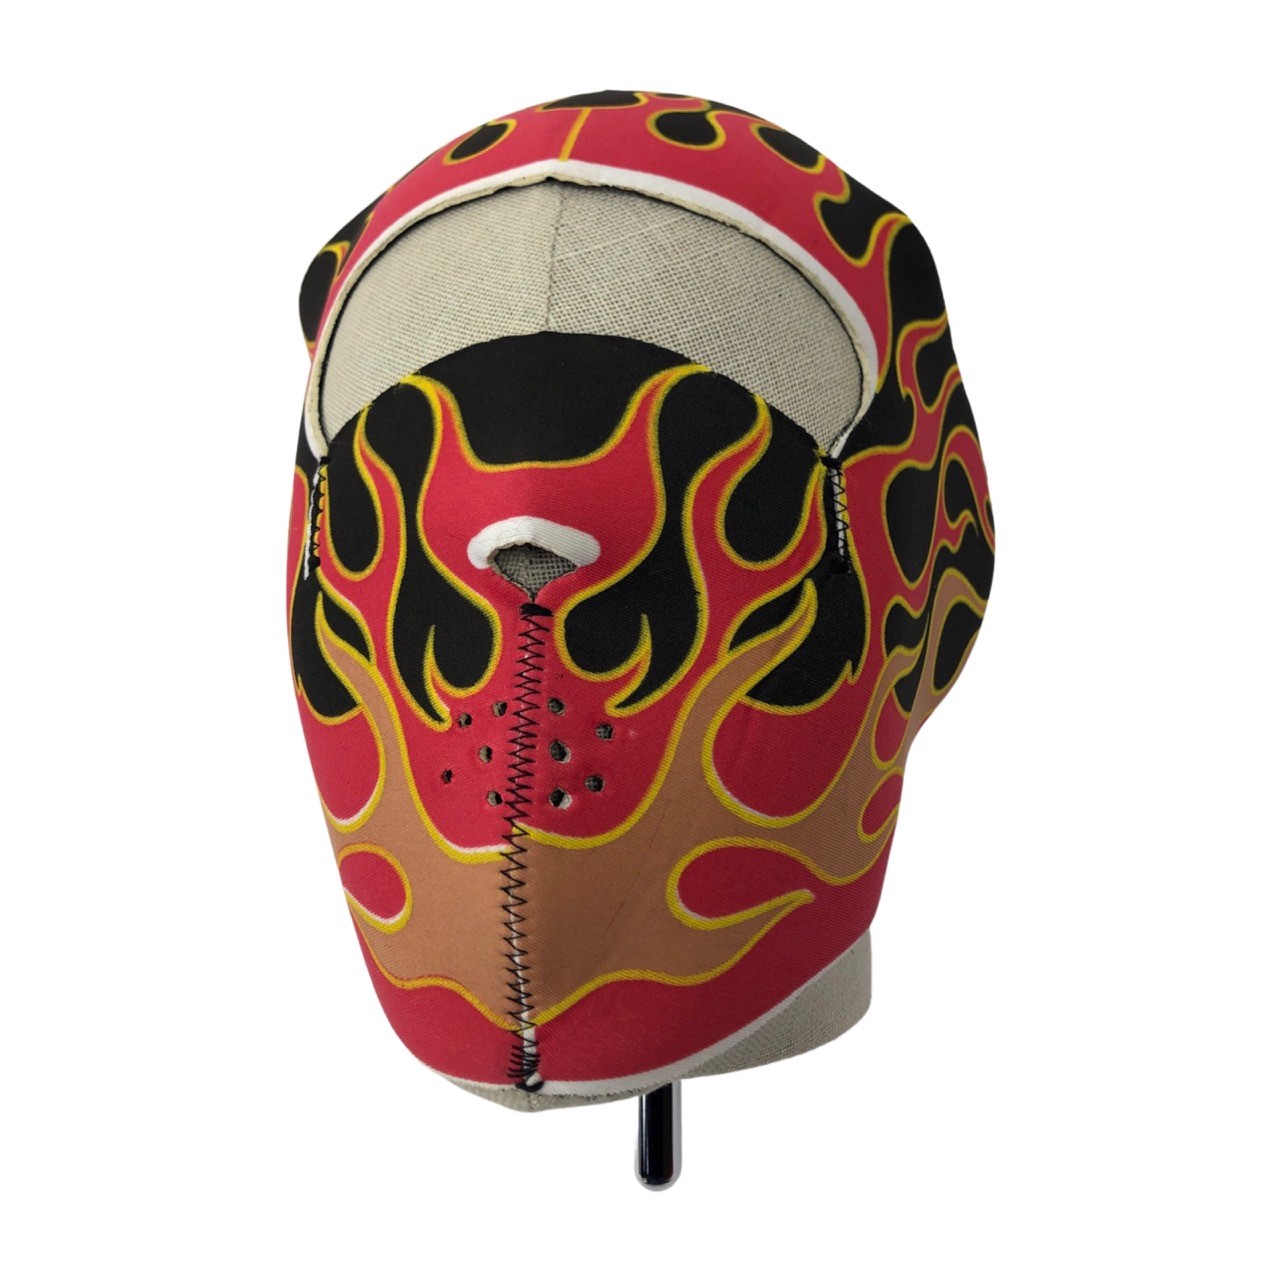 UNIVERSEEL Foam masker flames winddicht en zeer warm - Neopreen - 18 CM x 21 CM Moped bandana / masker 